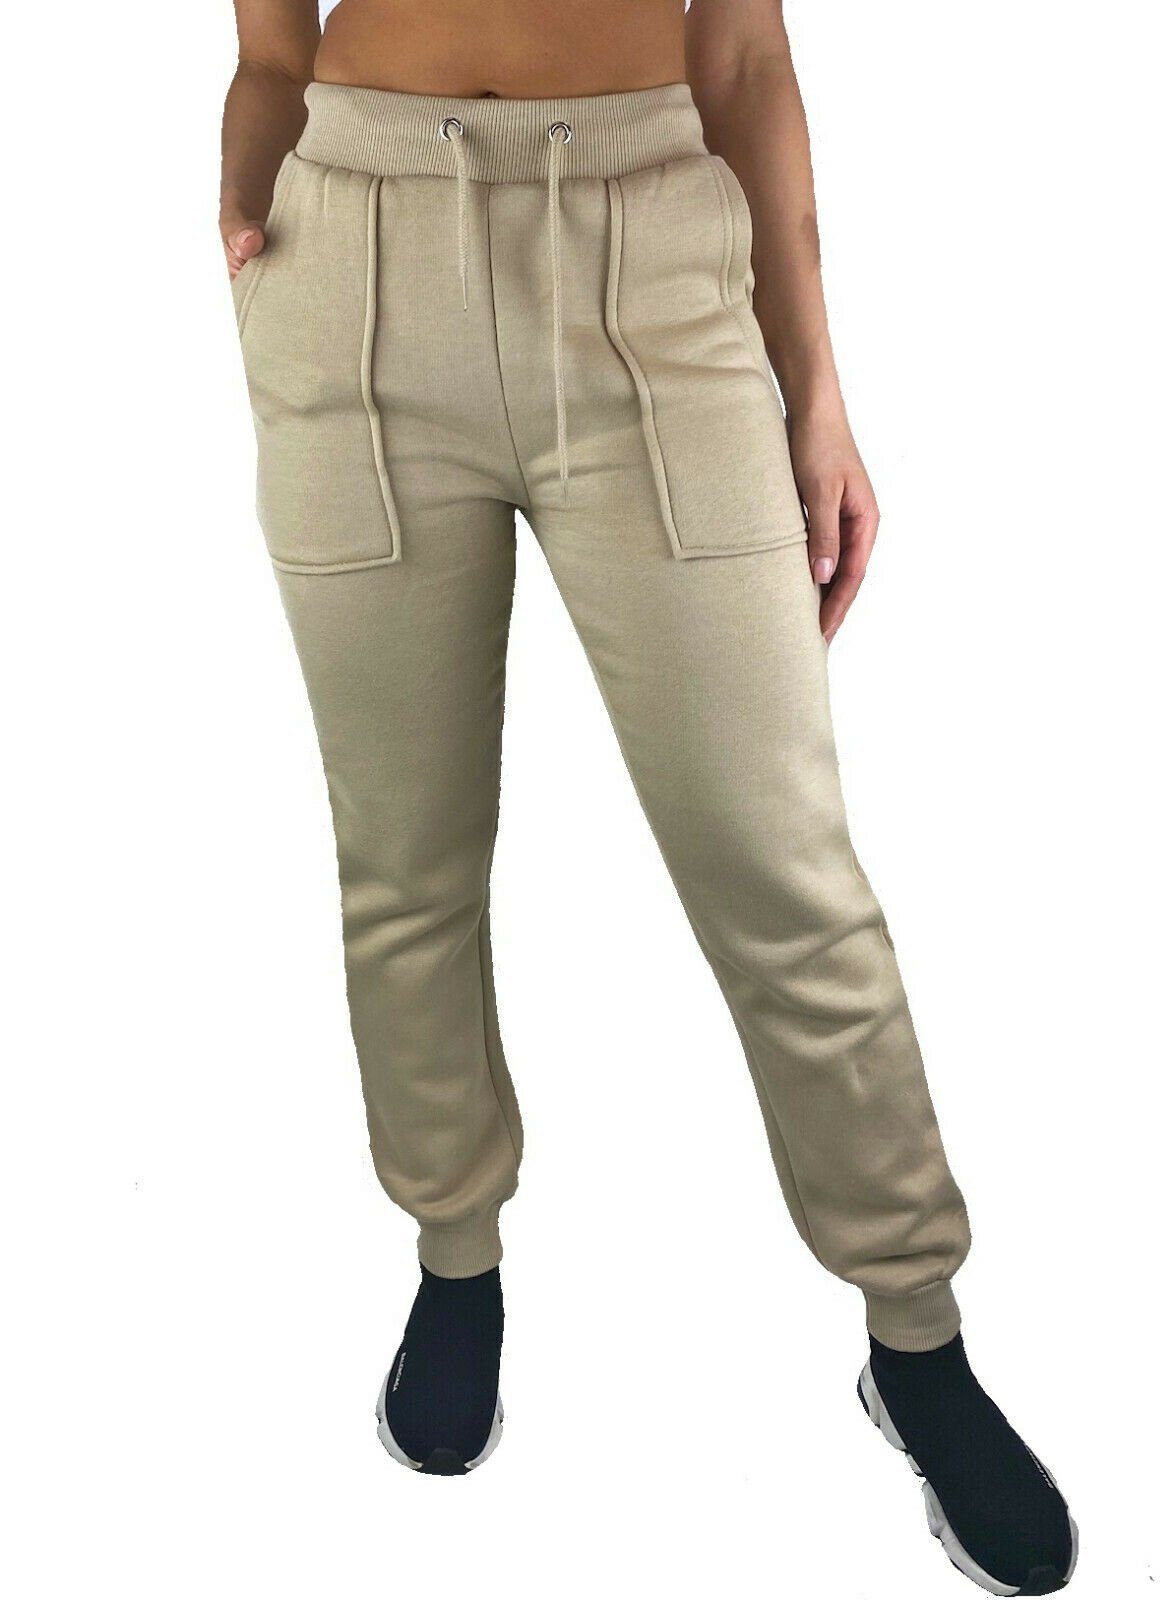 Damen Jogginghose Sweatpants in verschiedenen Designs 